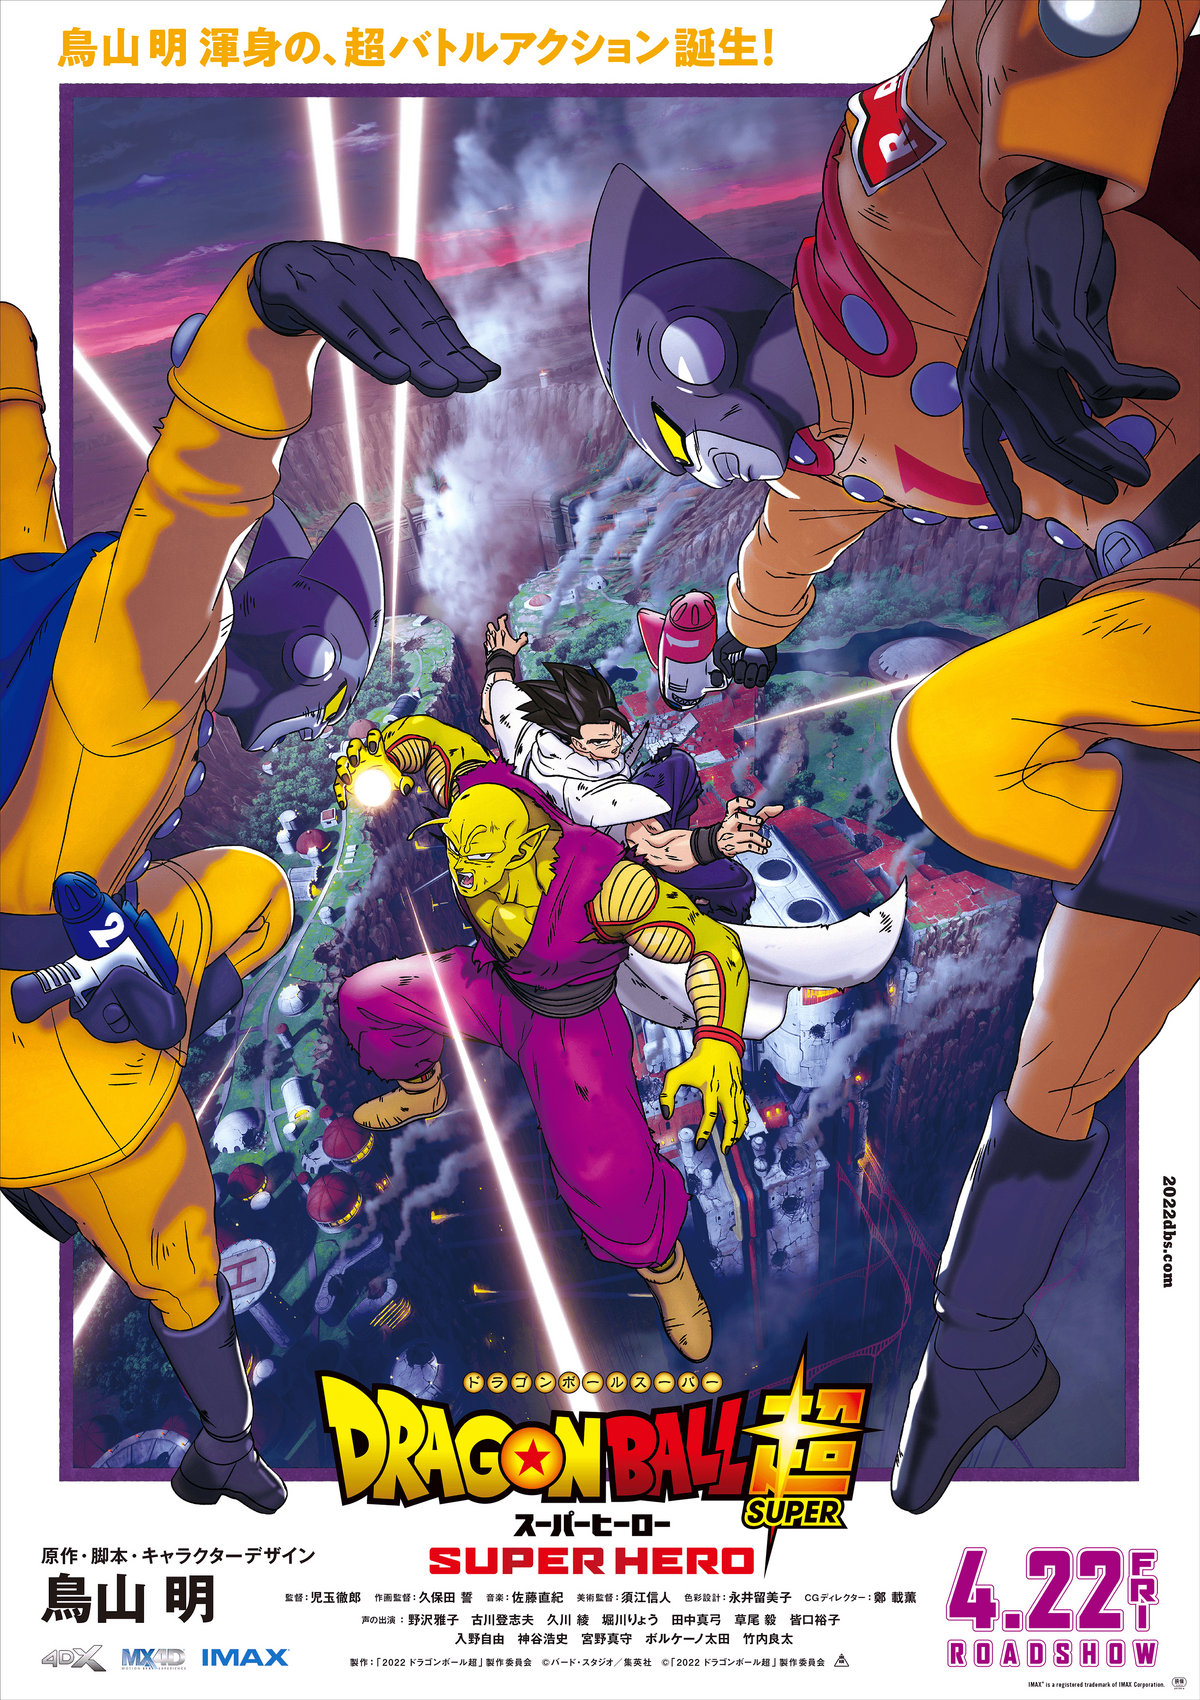 Dragon Ball Super comparte la primera imagen de su capítulo 100 de